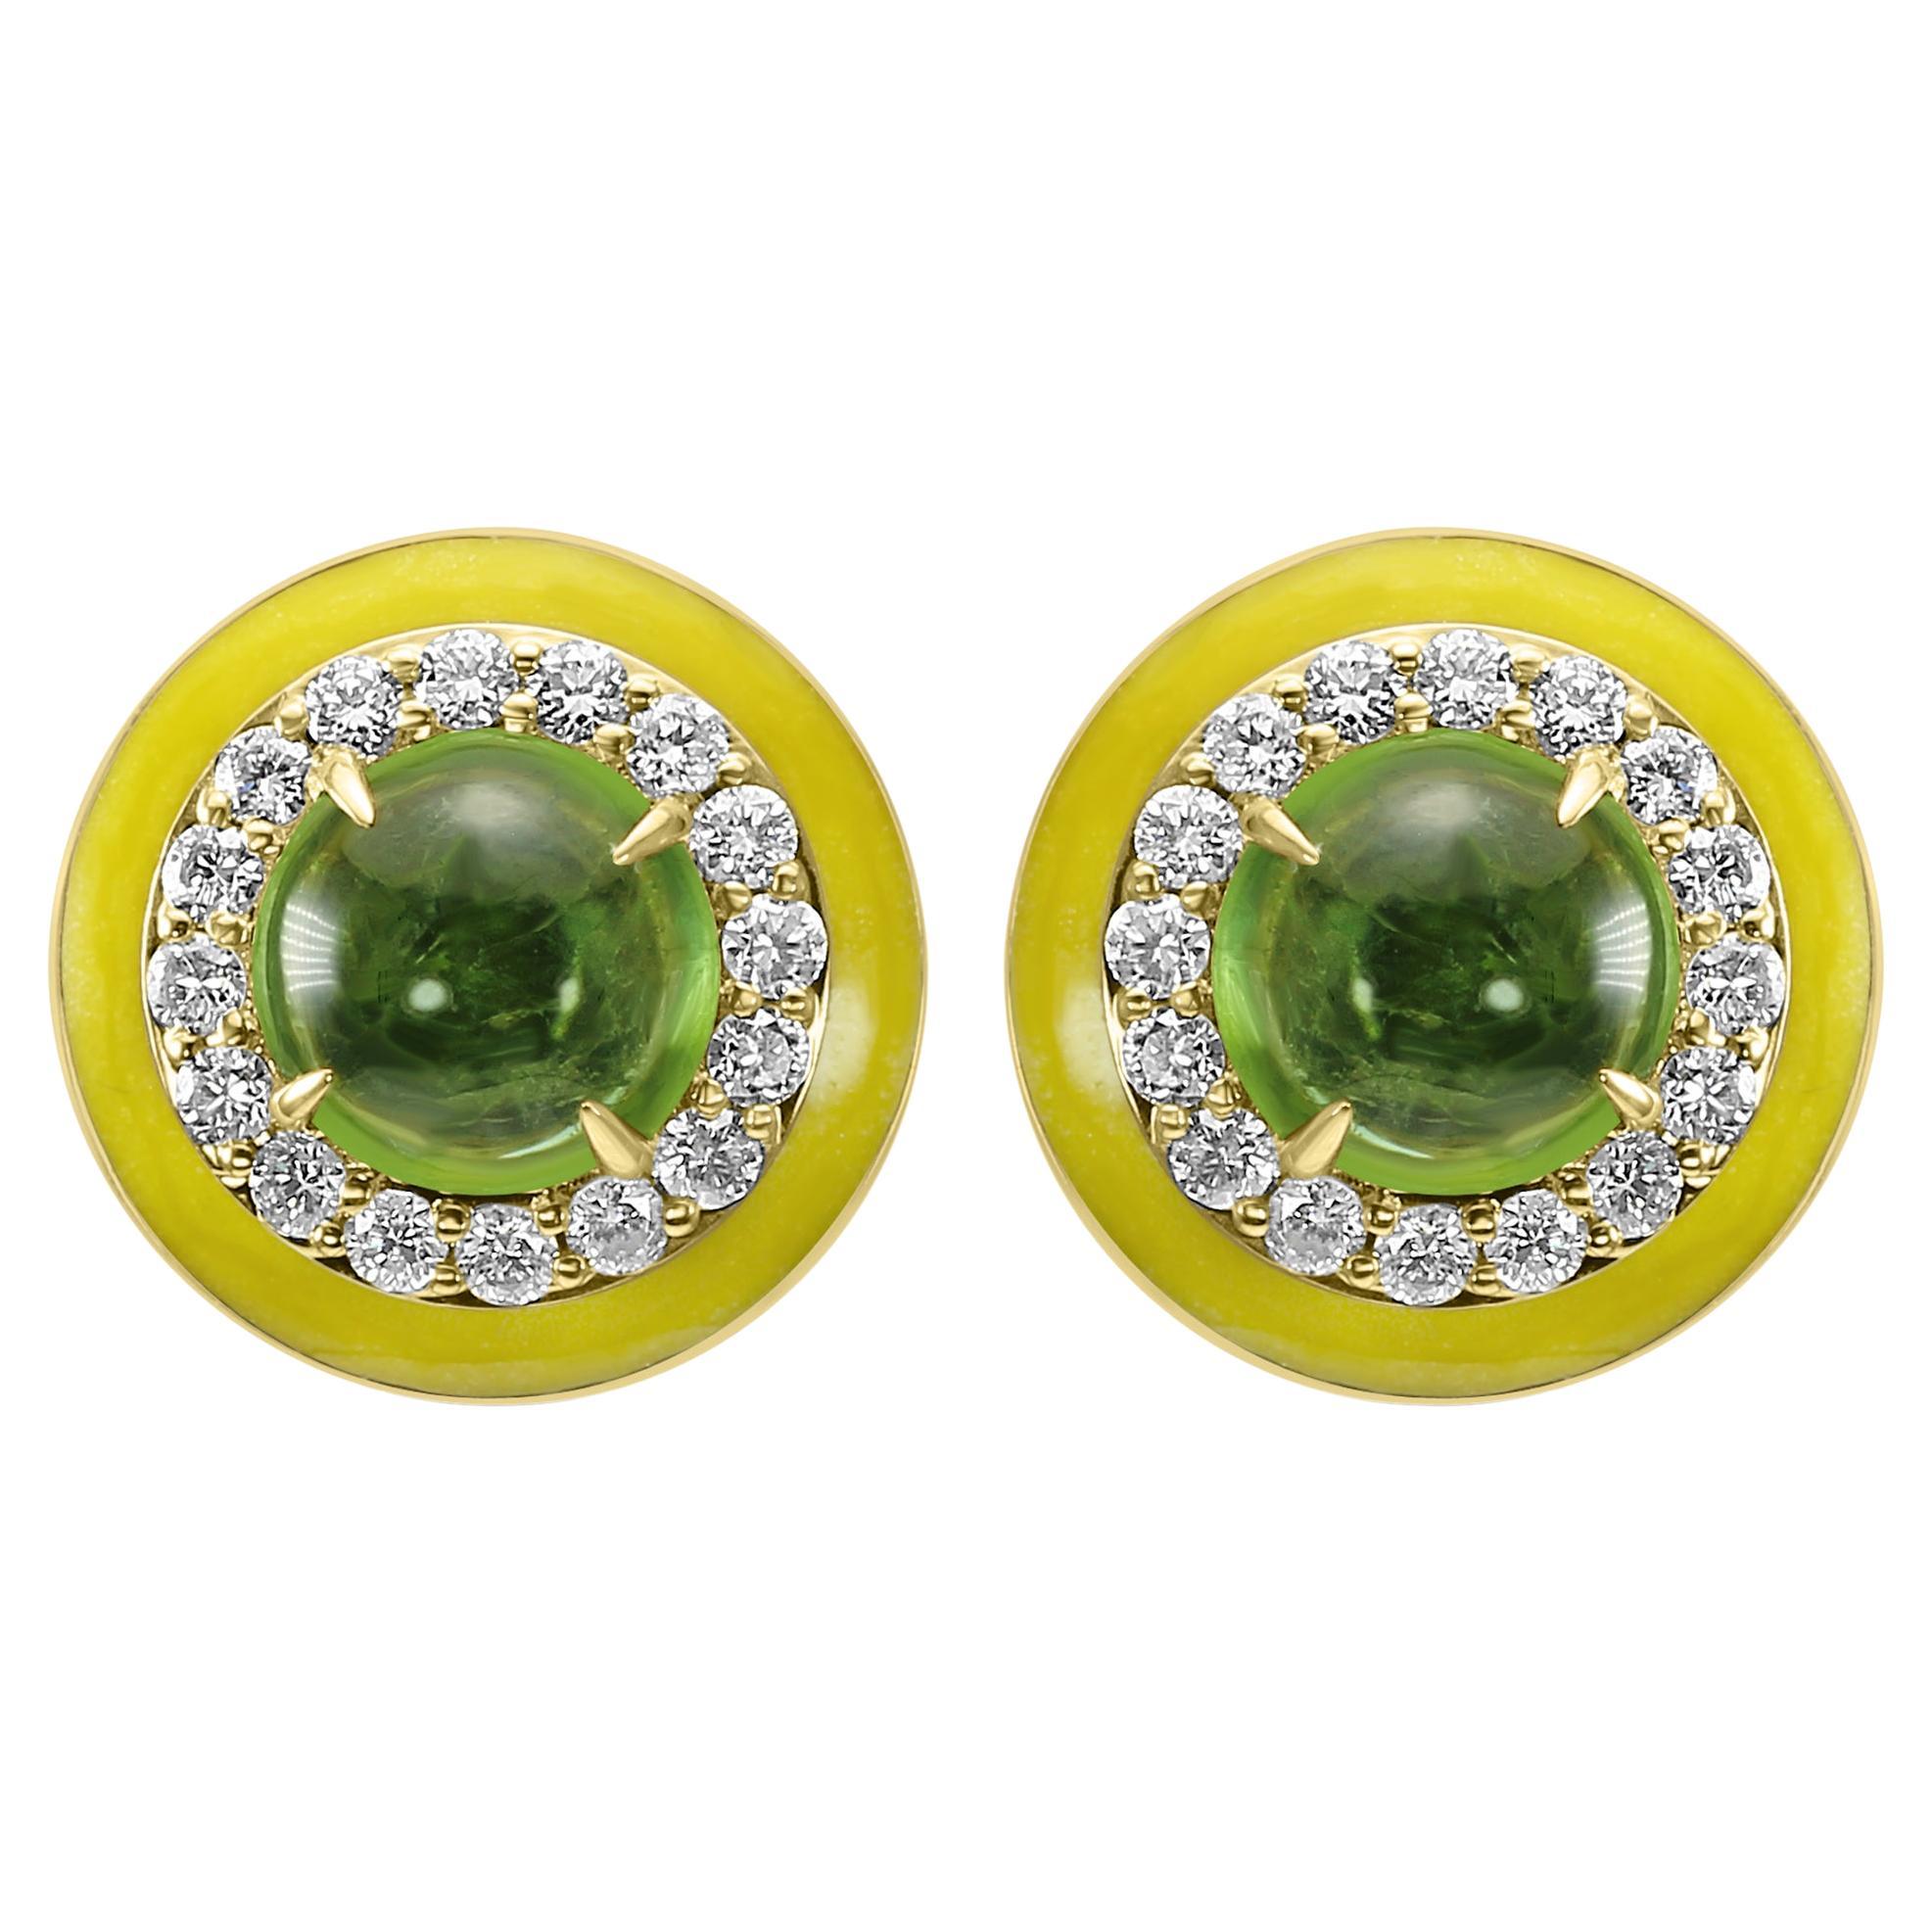 Gelbgold-Mode-Ohrring mit grünem Turmalin, rundem Diamant, gelber Emaille und Halo aus Gelbgold